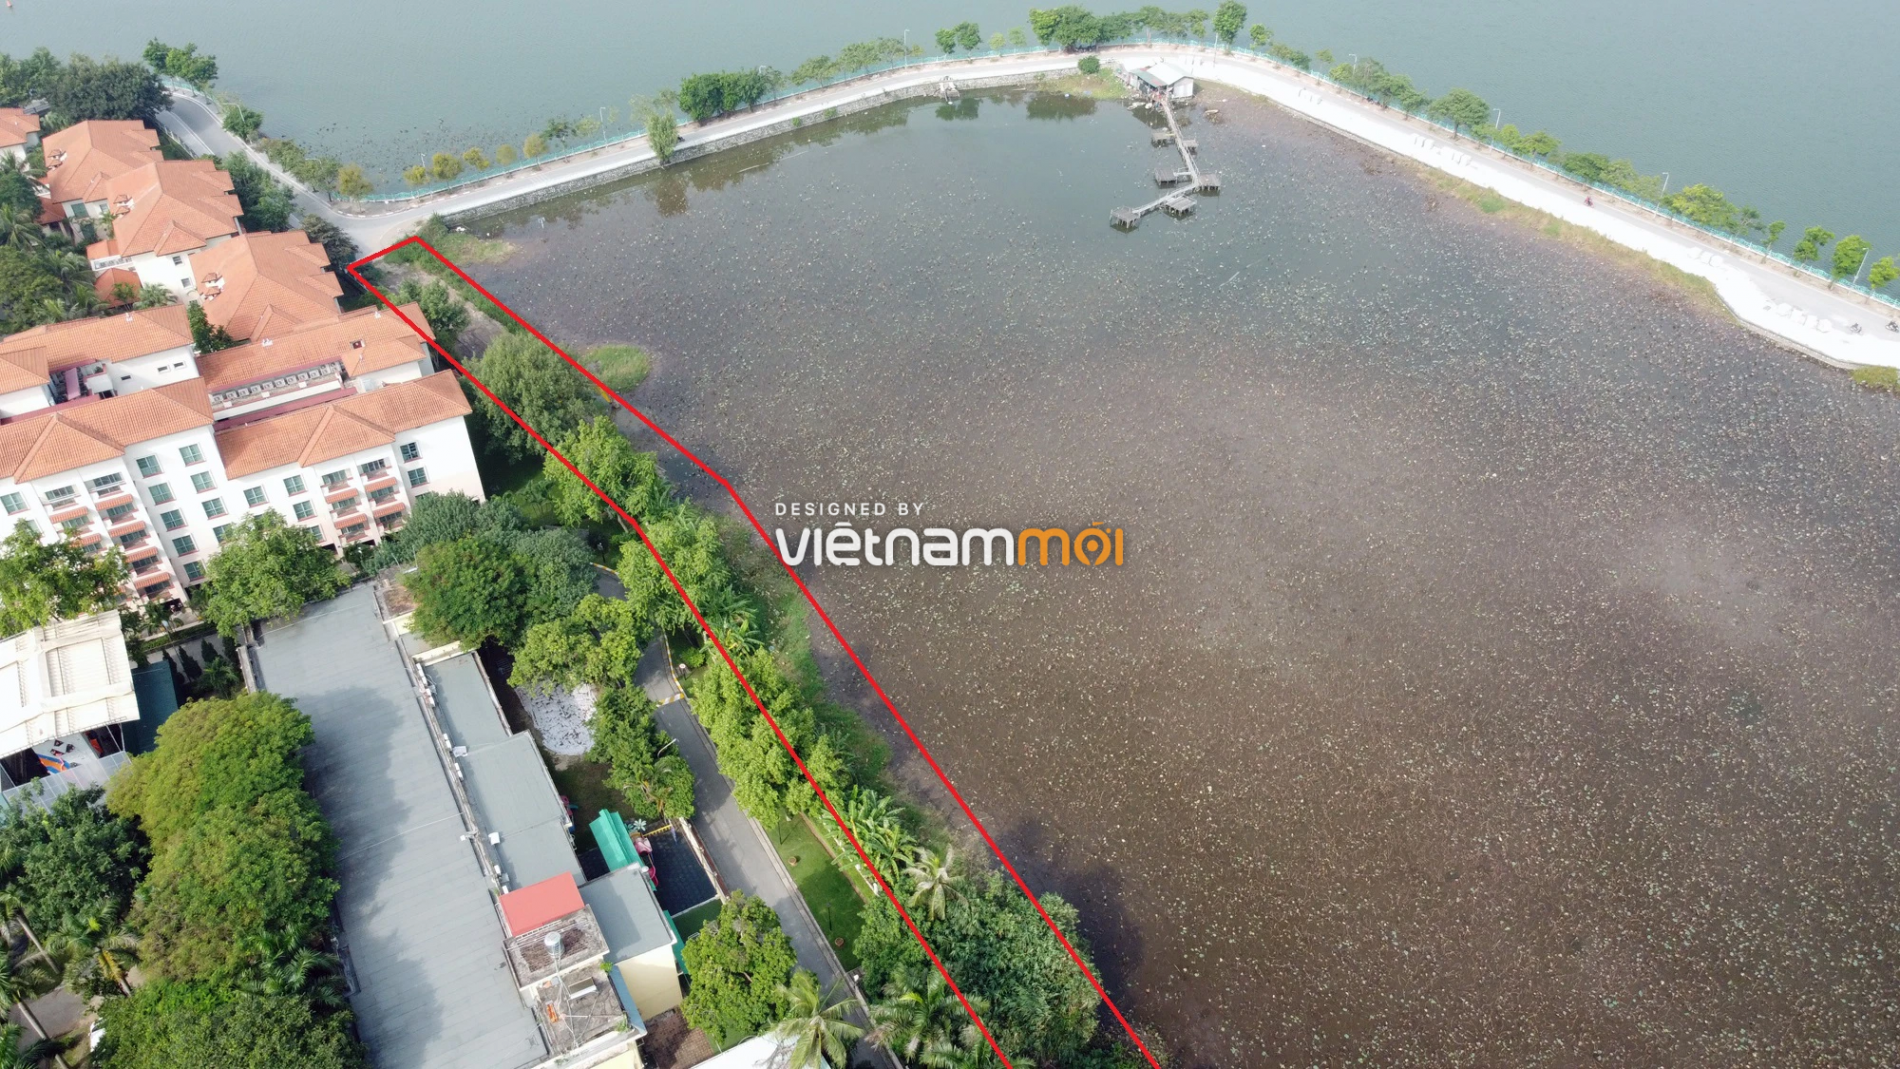 Những khu đất sắp thu hồi để mở đường ở quận Tây Hồ, Hà Nội (phần 4) - Ảnh 6.